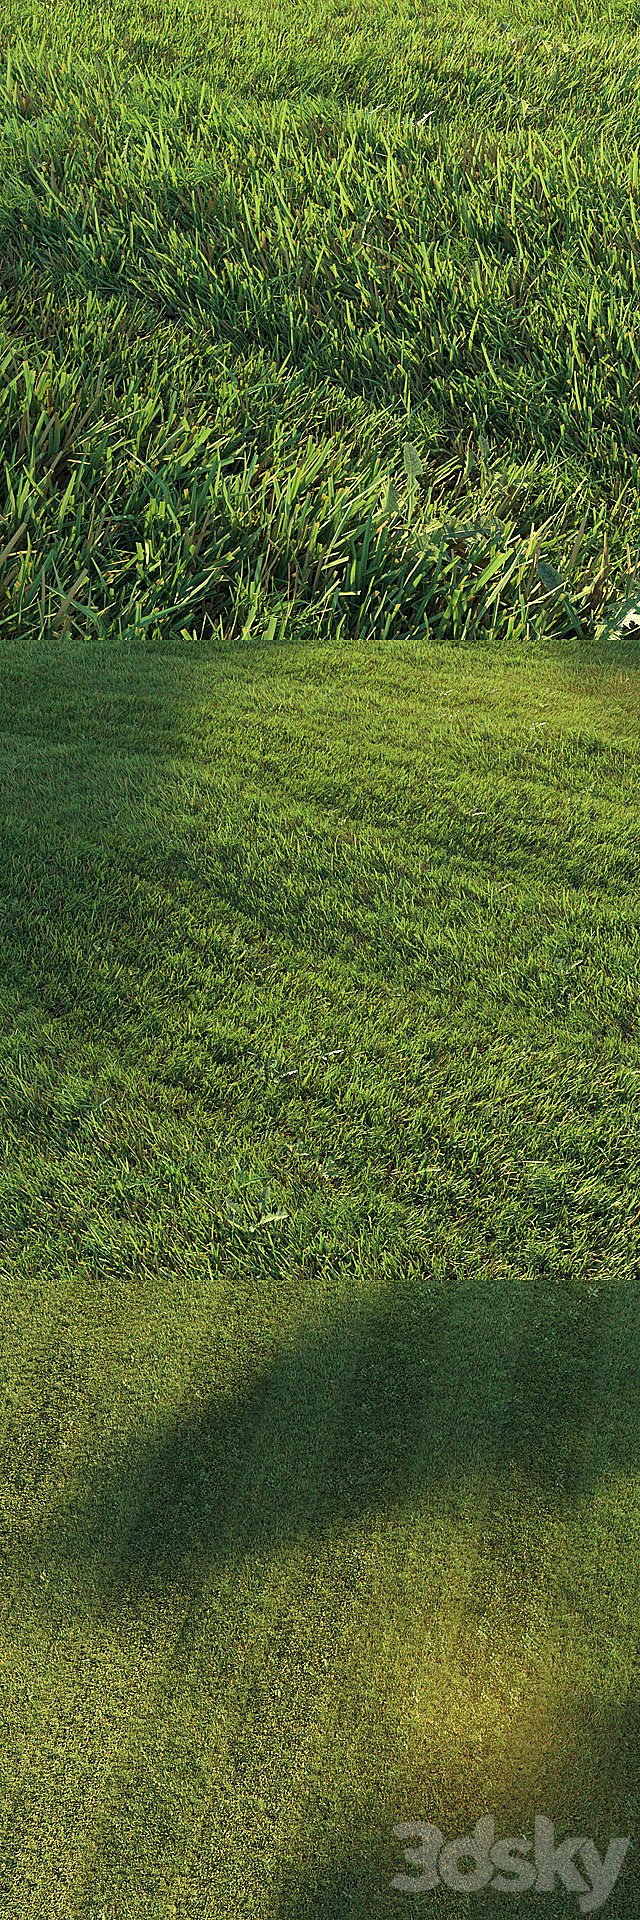 Mowed lawn 3DSMax File - thumbnail 2